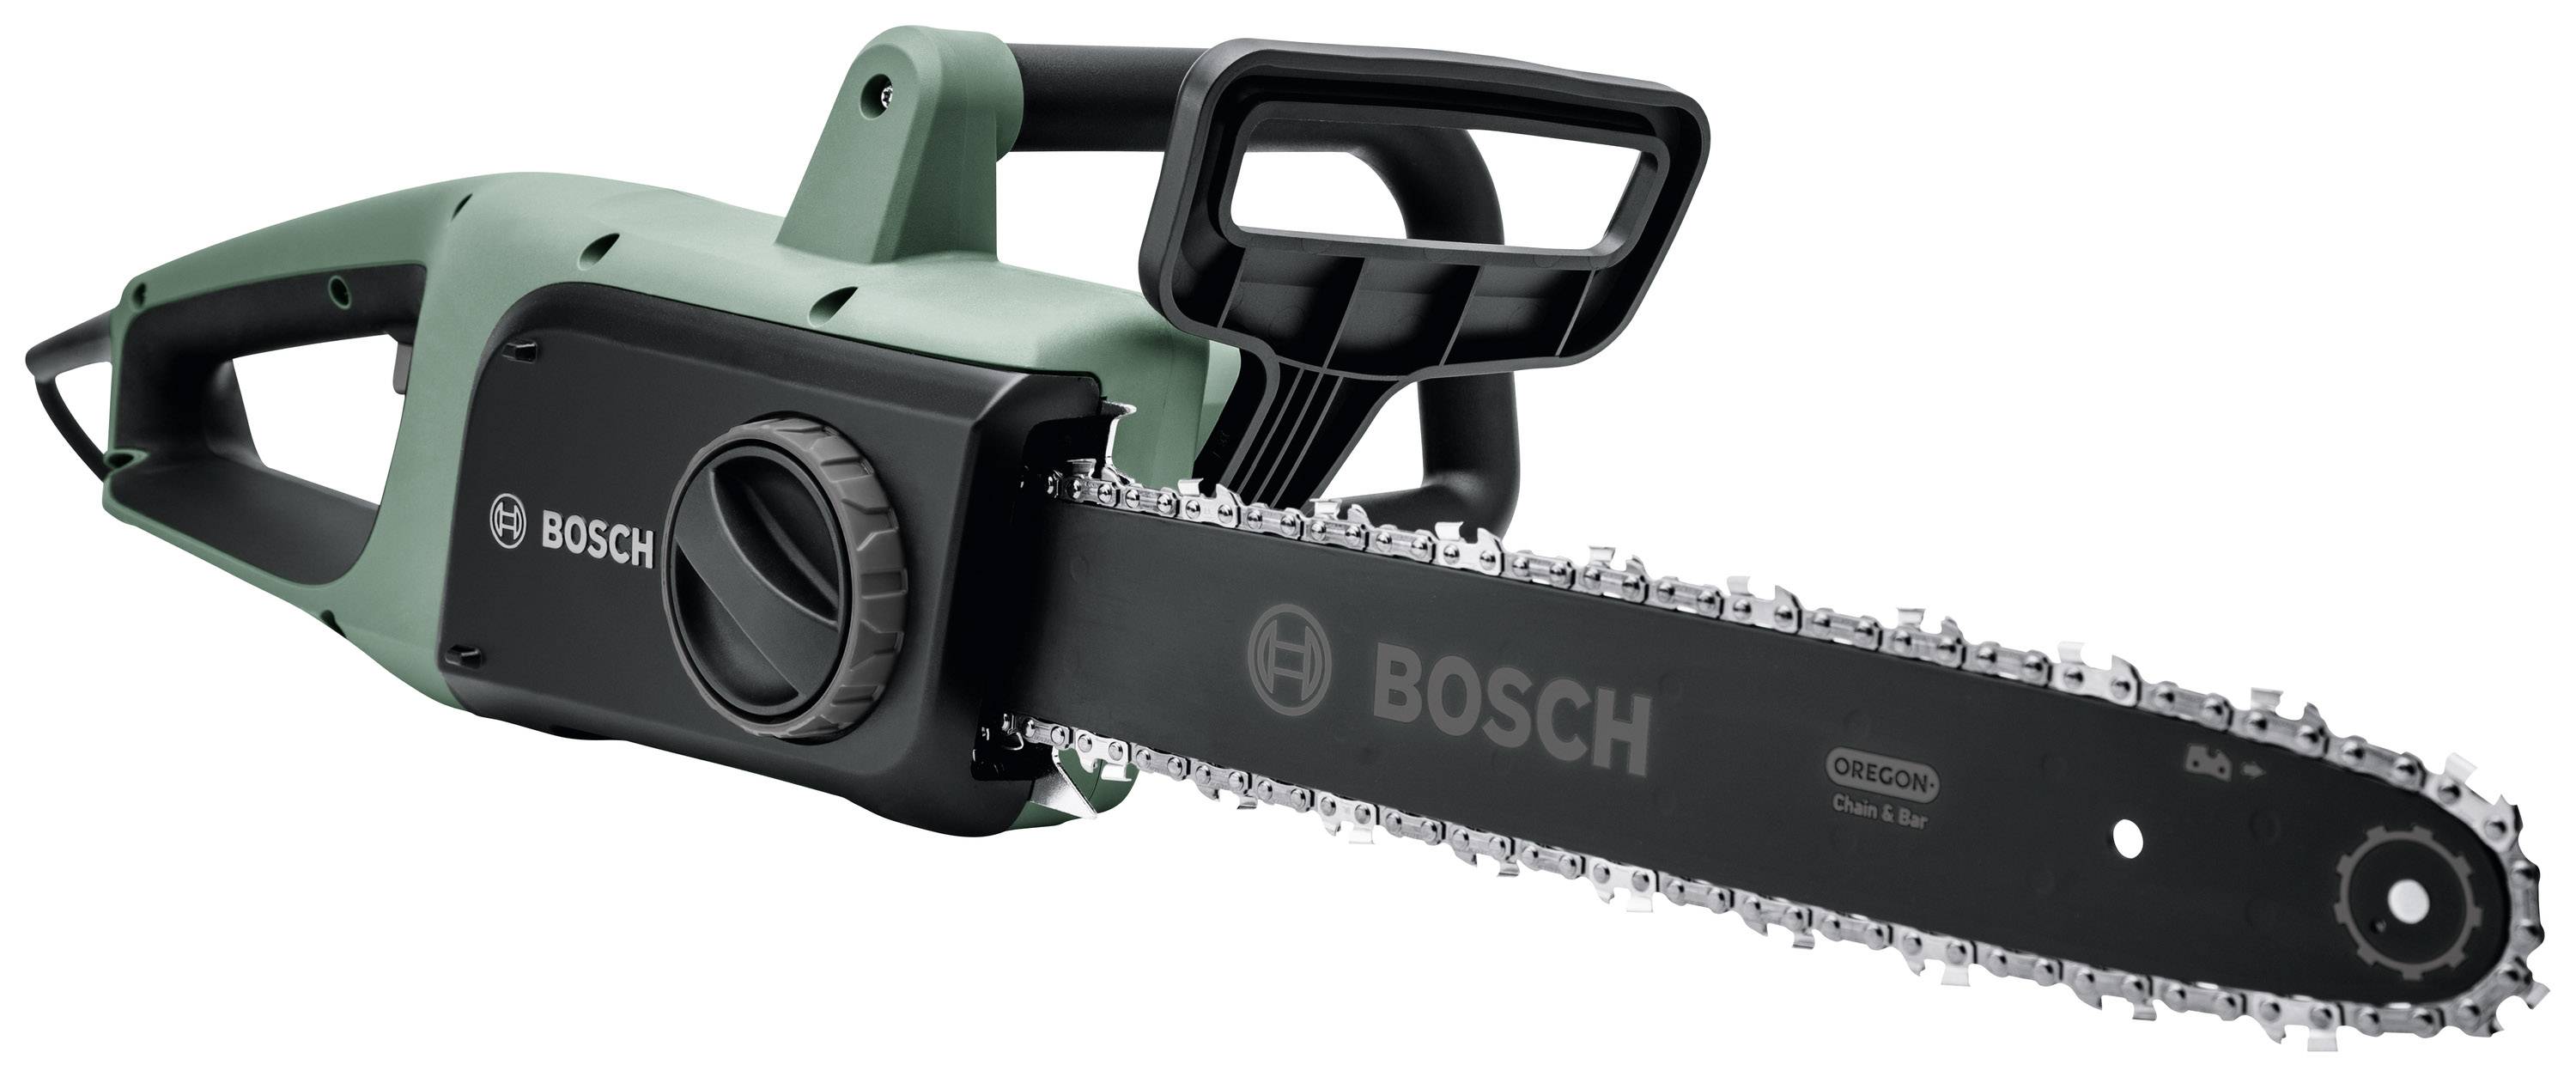 Bosch Home And Garden Universalchain 40 Electrique Tronconneuse Avec Etrier De Protection 1800 W Longueur De Lame 40 Mm